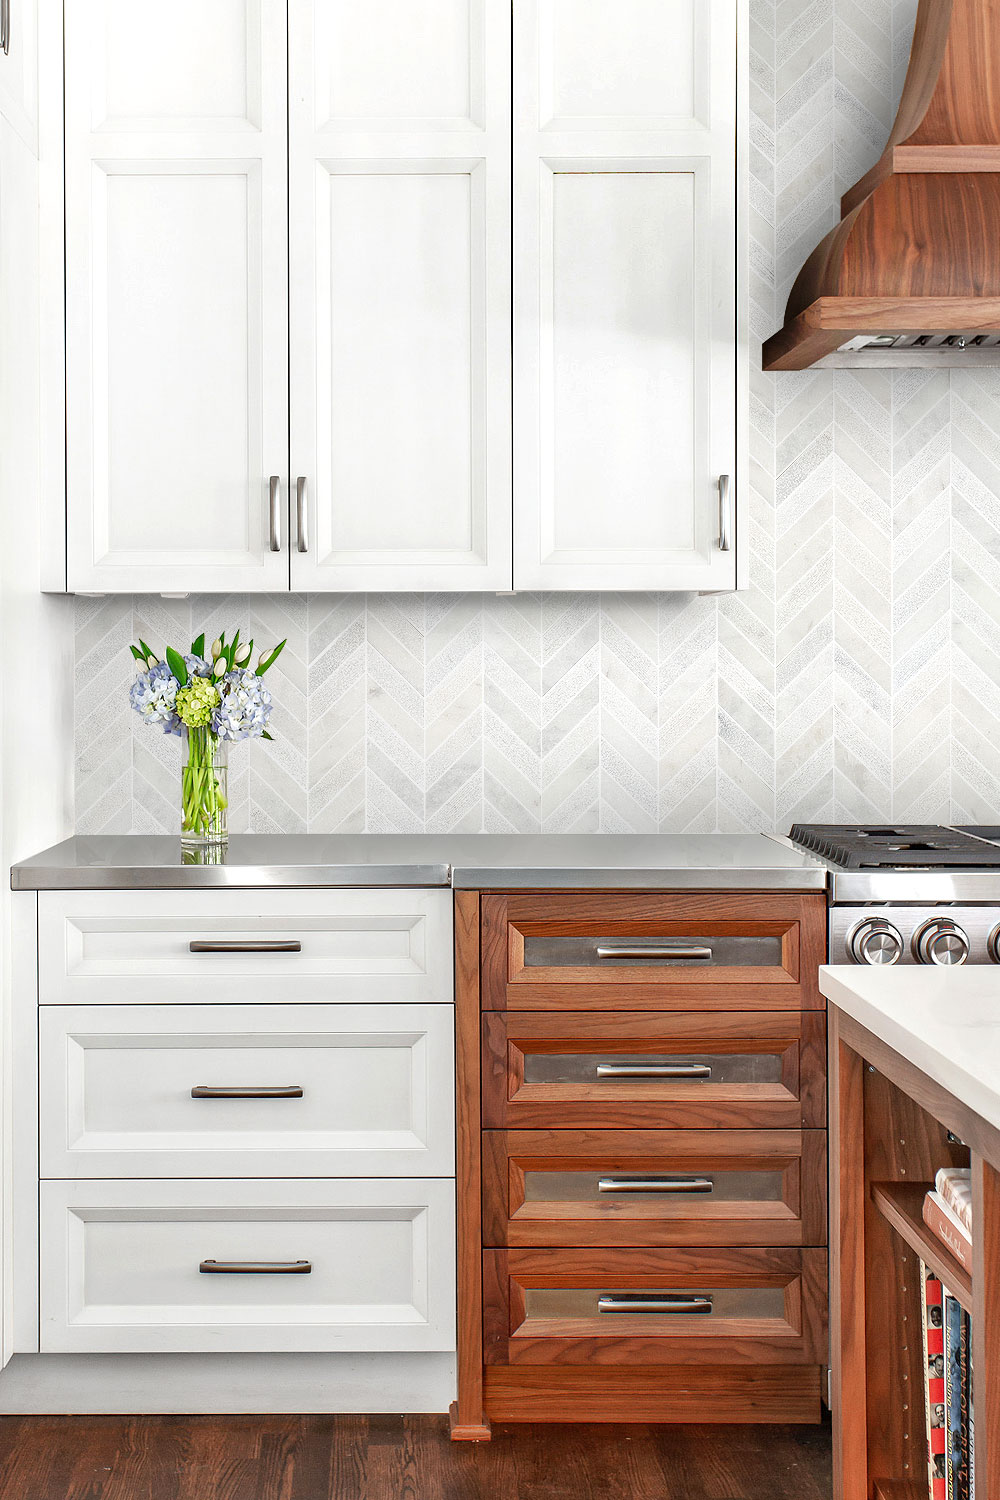 White And Brown Kitchen Cabinets Chevron White Backsplash Tile